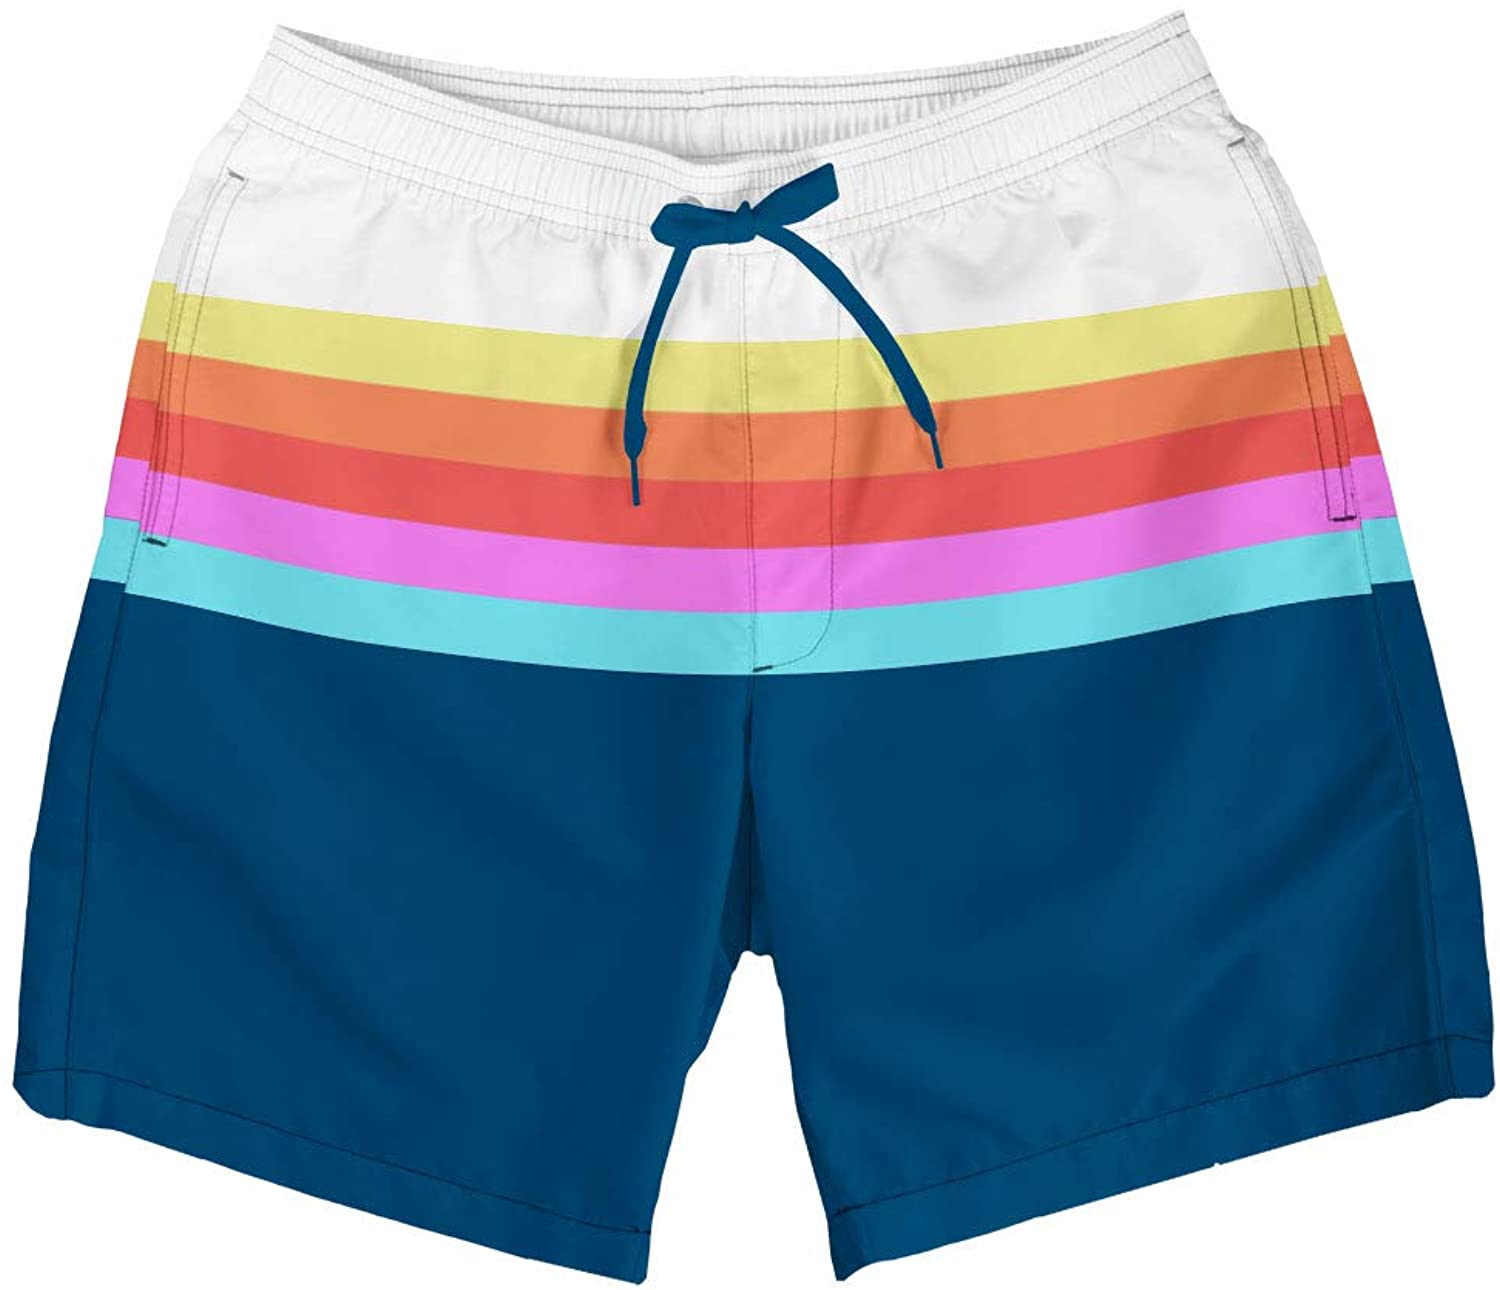 Mens Bright Swim Trunks for Spring Break and Summer Board Shorts for Guys